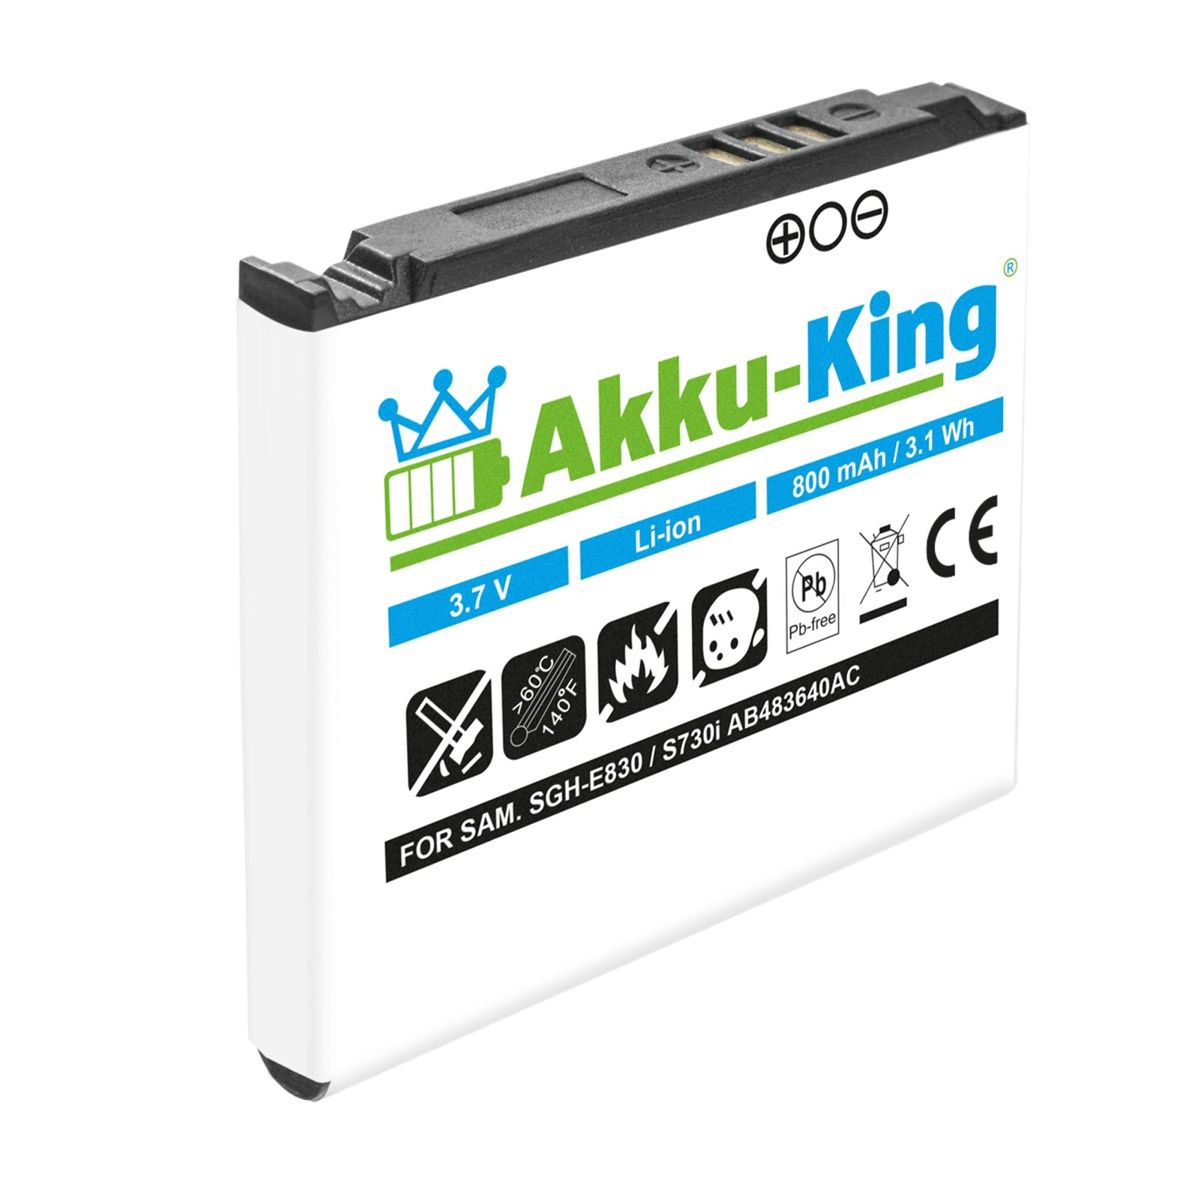 kompatibel mit Samsung Akku AB483640AE Volt, AKKU-KING 800mAh 3.7 Handy-Akku, Li-Ion